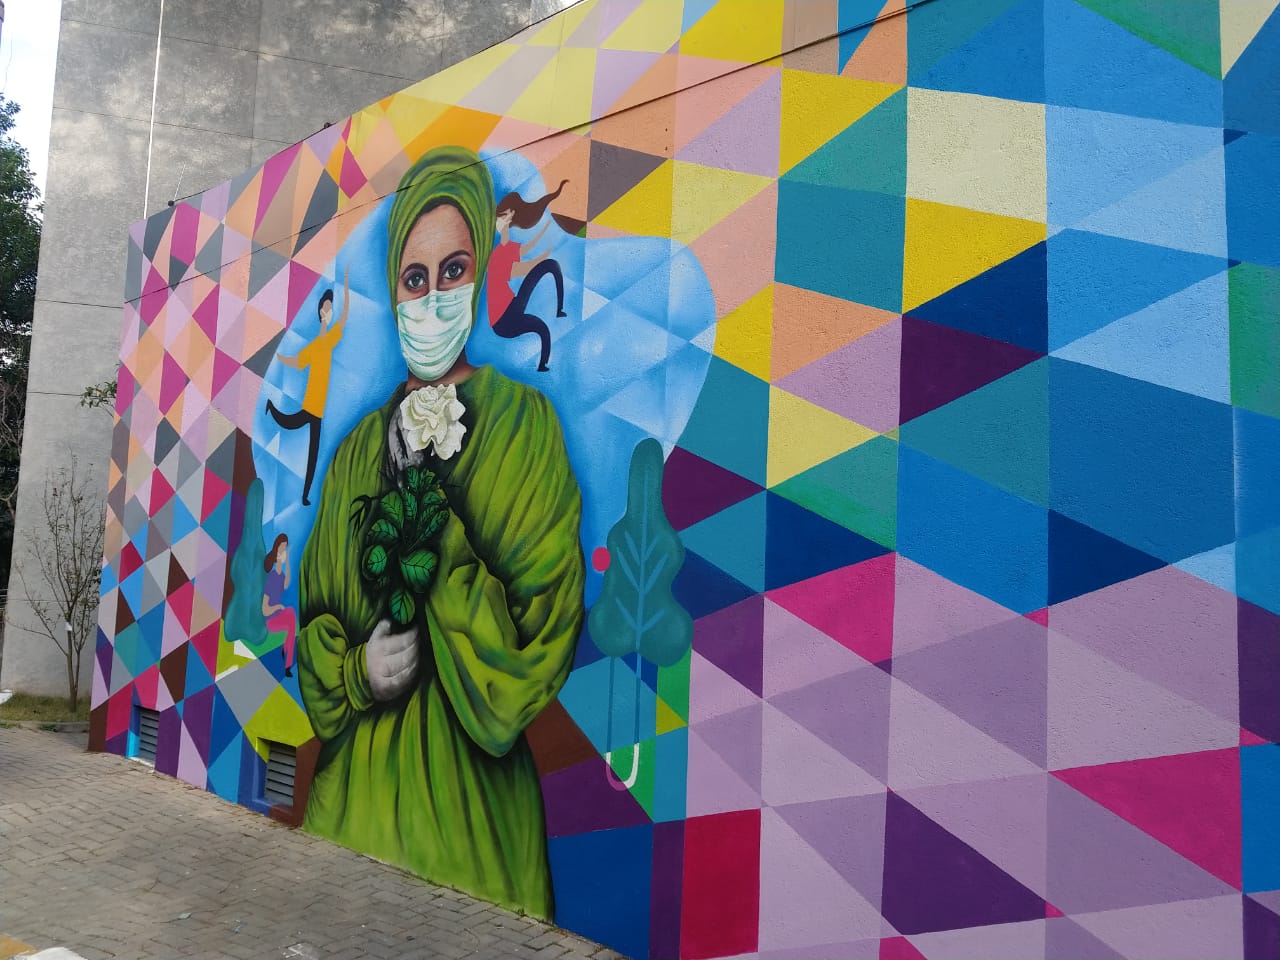 Covid-19: Hospital das Clínicas de SP ganha arte urbana em homenagem aos heróis da saúde